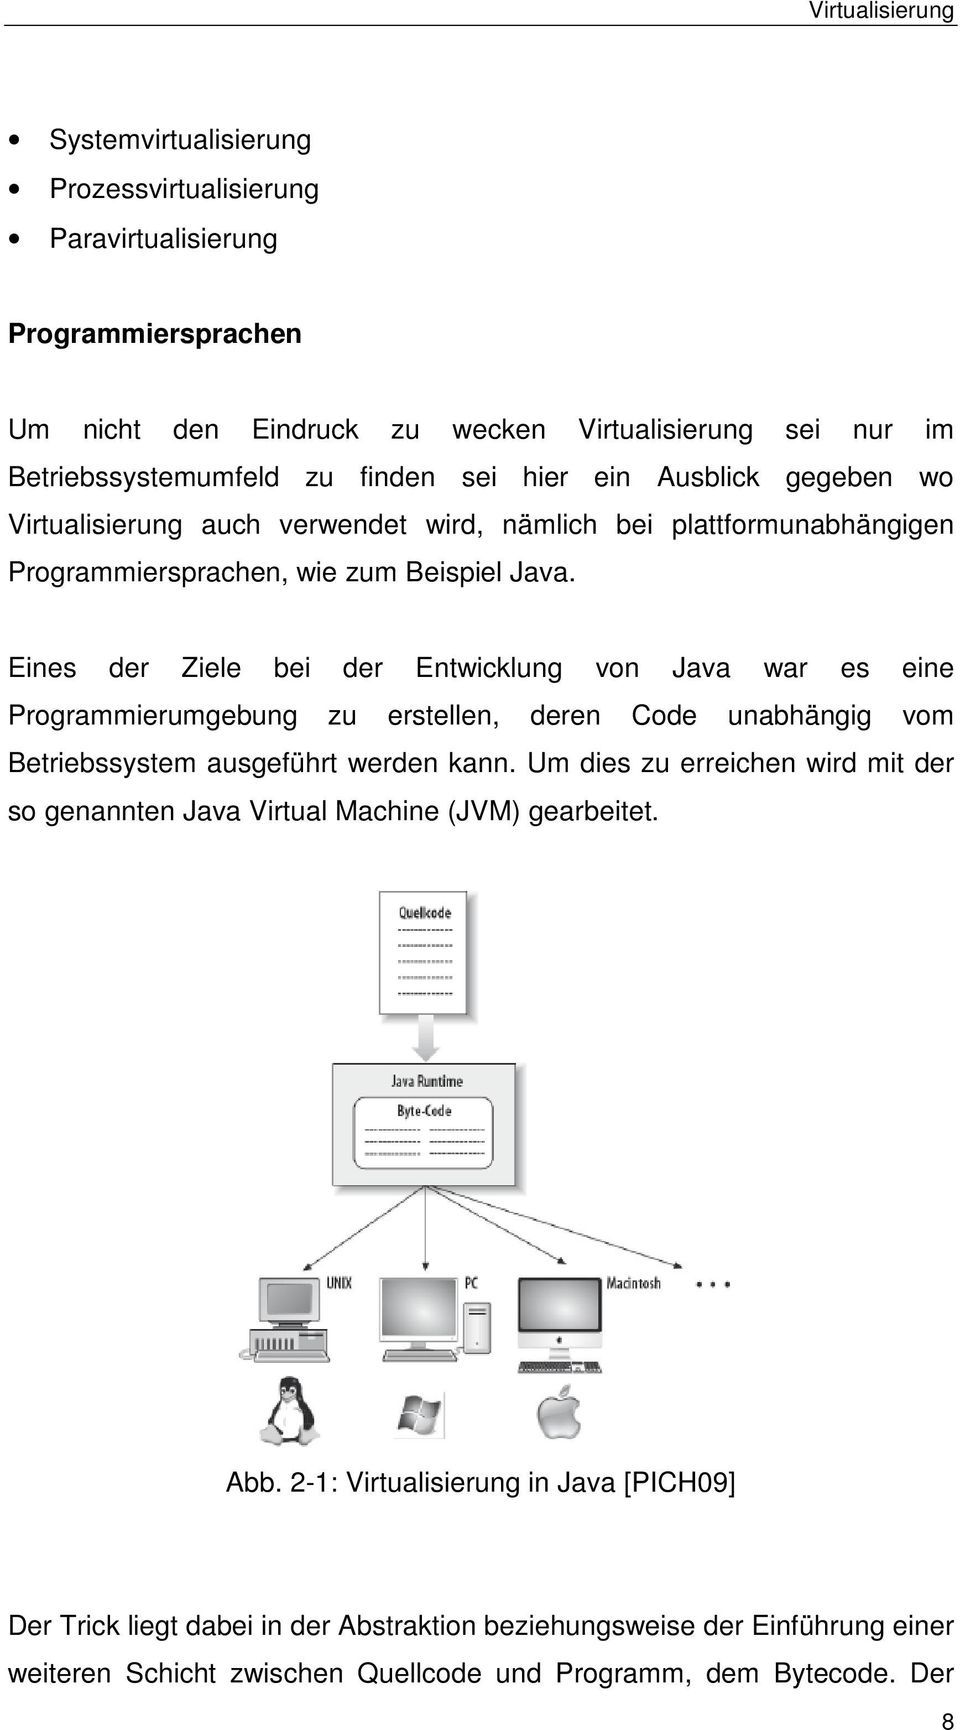 Eines der Ziele bei der Entwicklung von Java war es eine Programmierumgebung zu erstellen, deren Code unabhängig vom Betriebssystem ausgeführt werden kann.